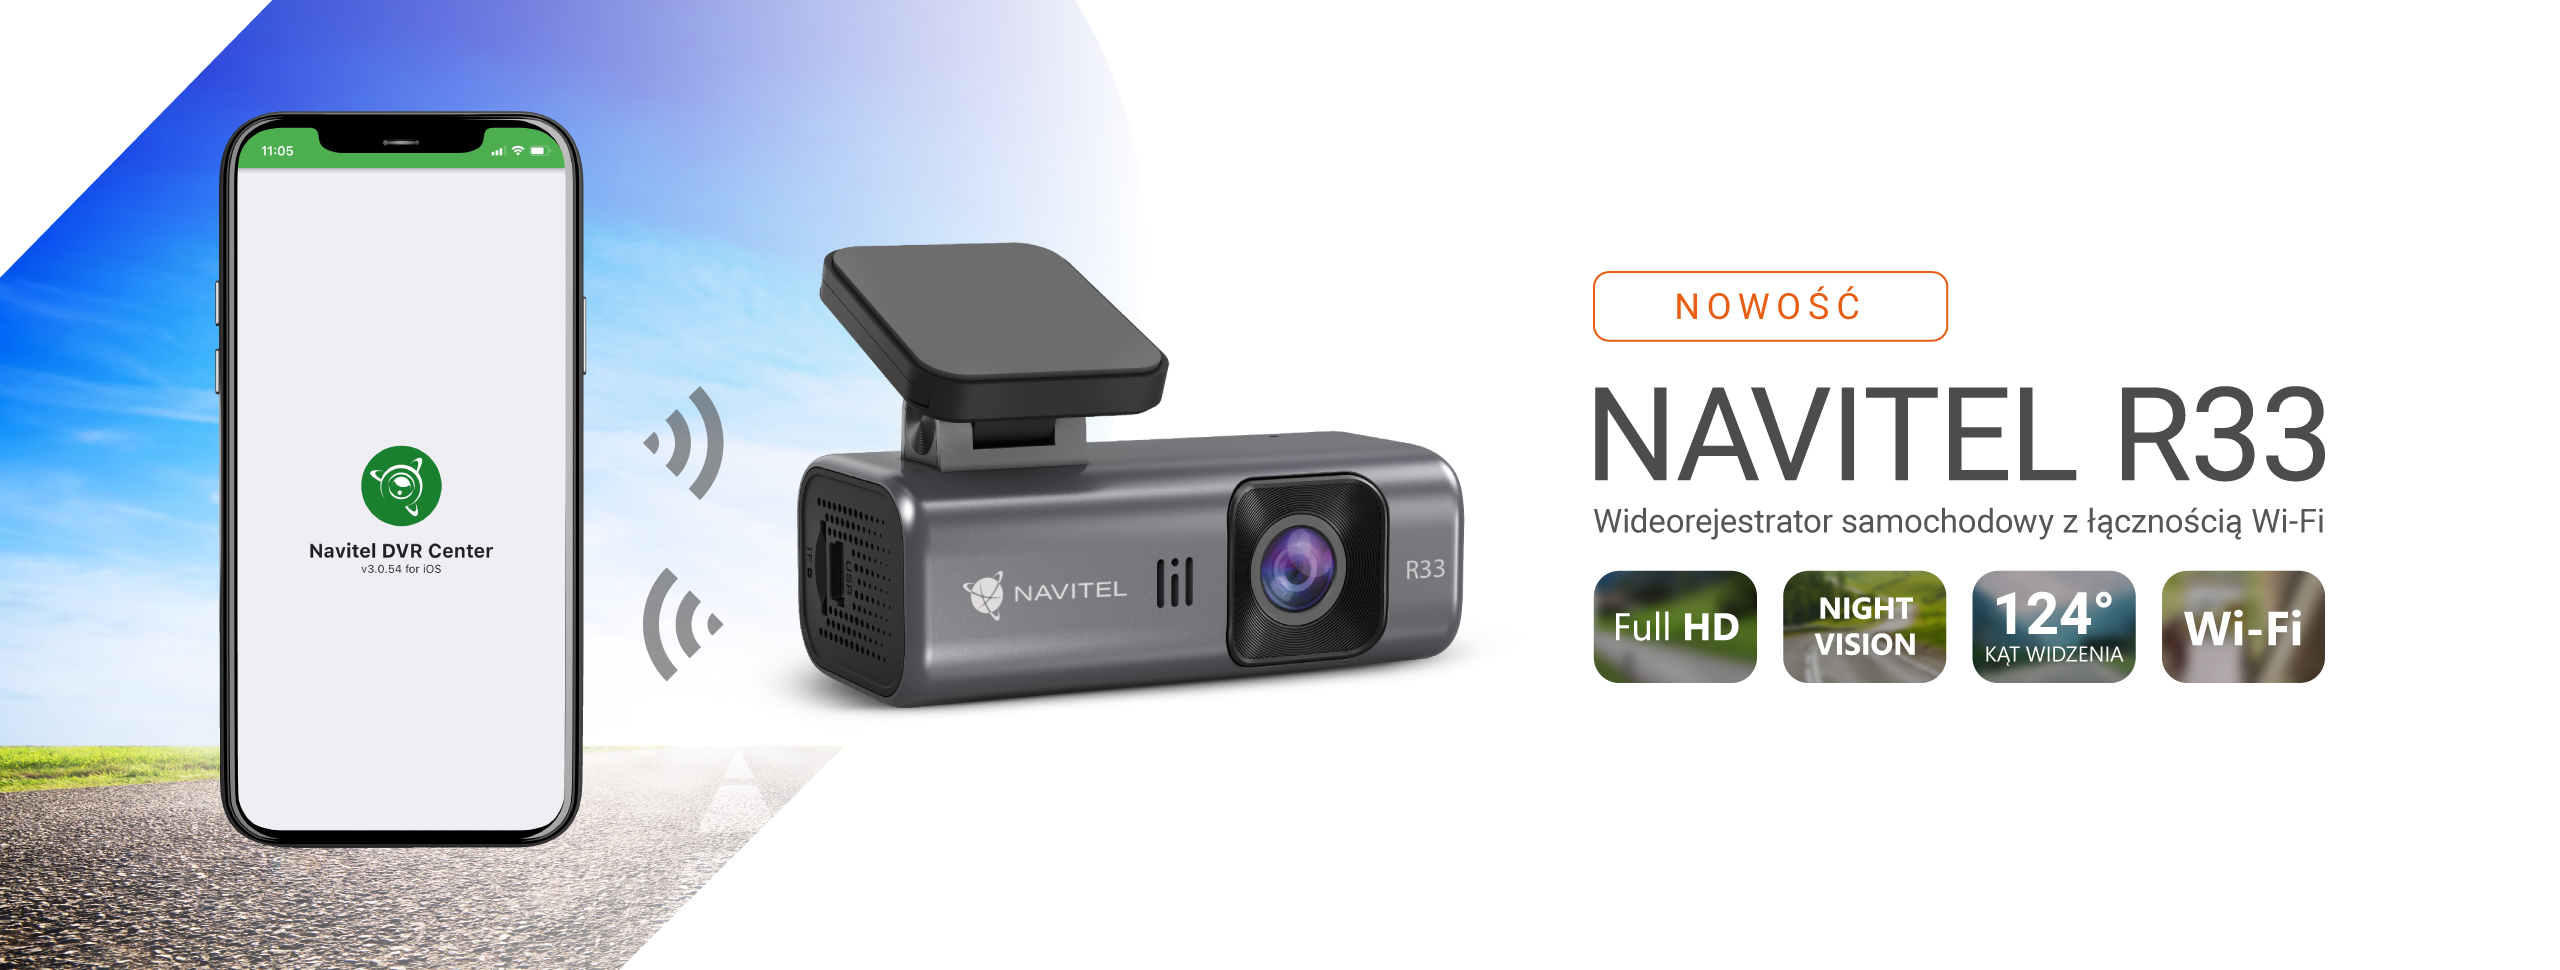 NAVITEL R33 – minimalistyczna kamera samochodowa z łącznością Wi-Fi